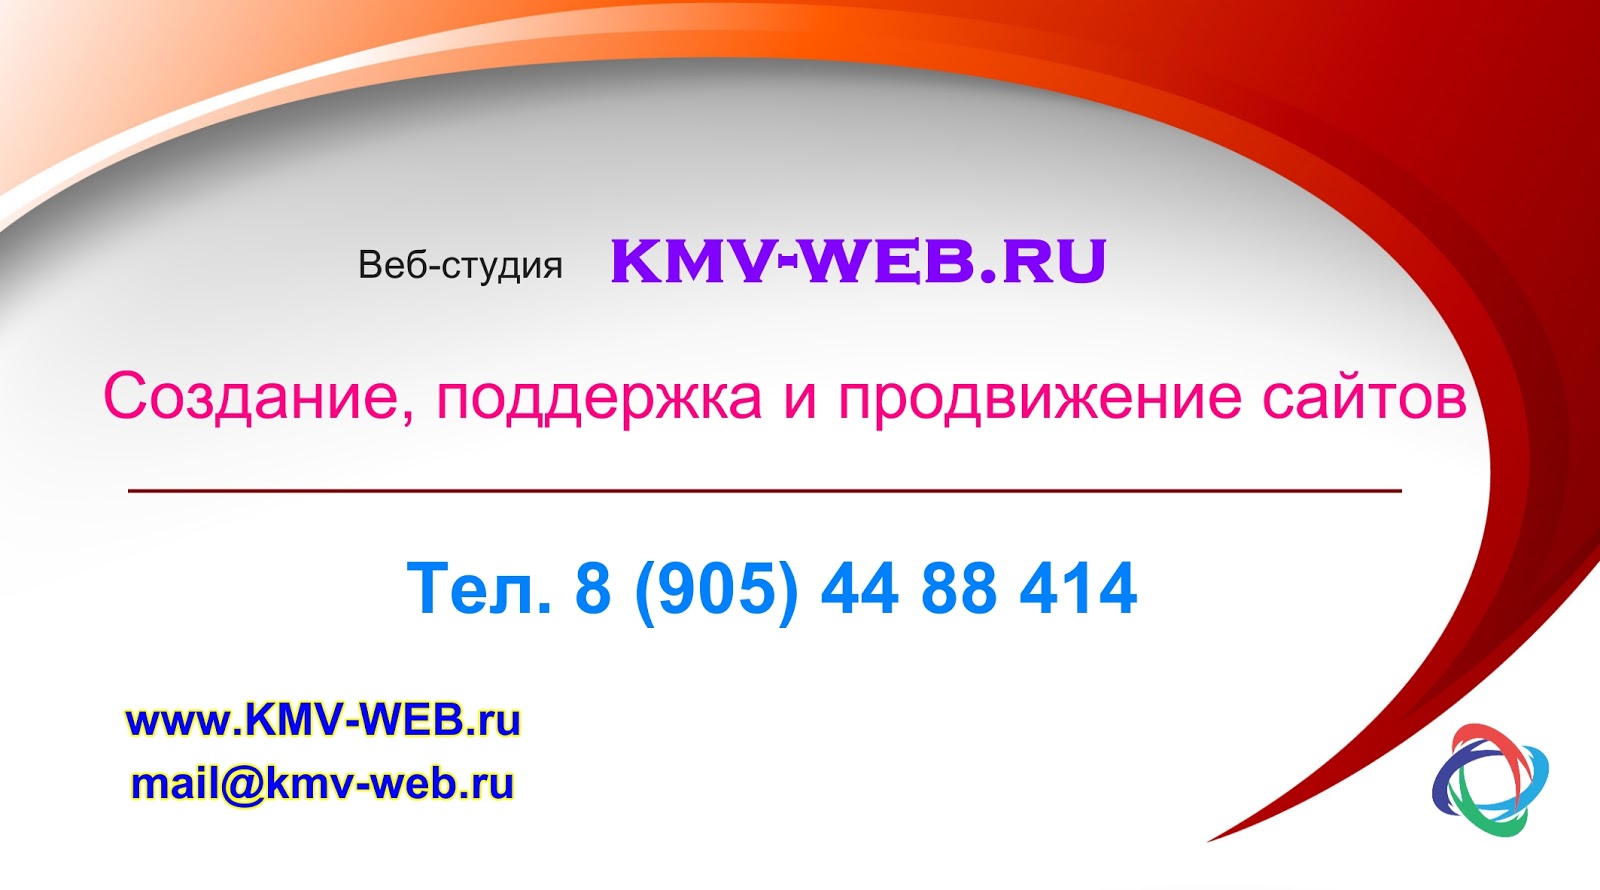 New web ru. LWG KMV.